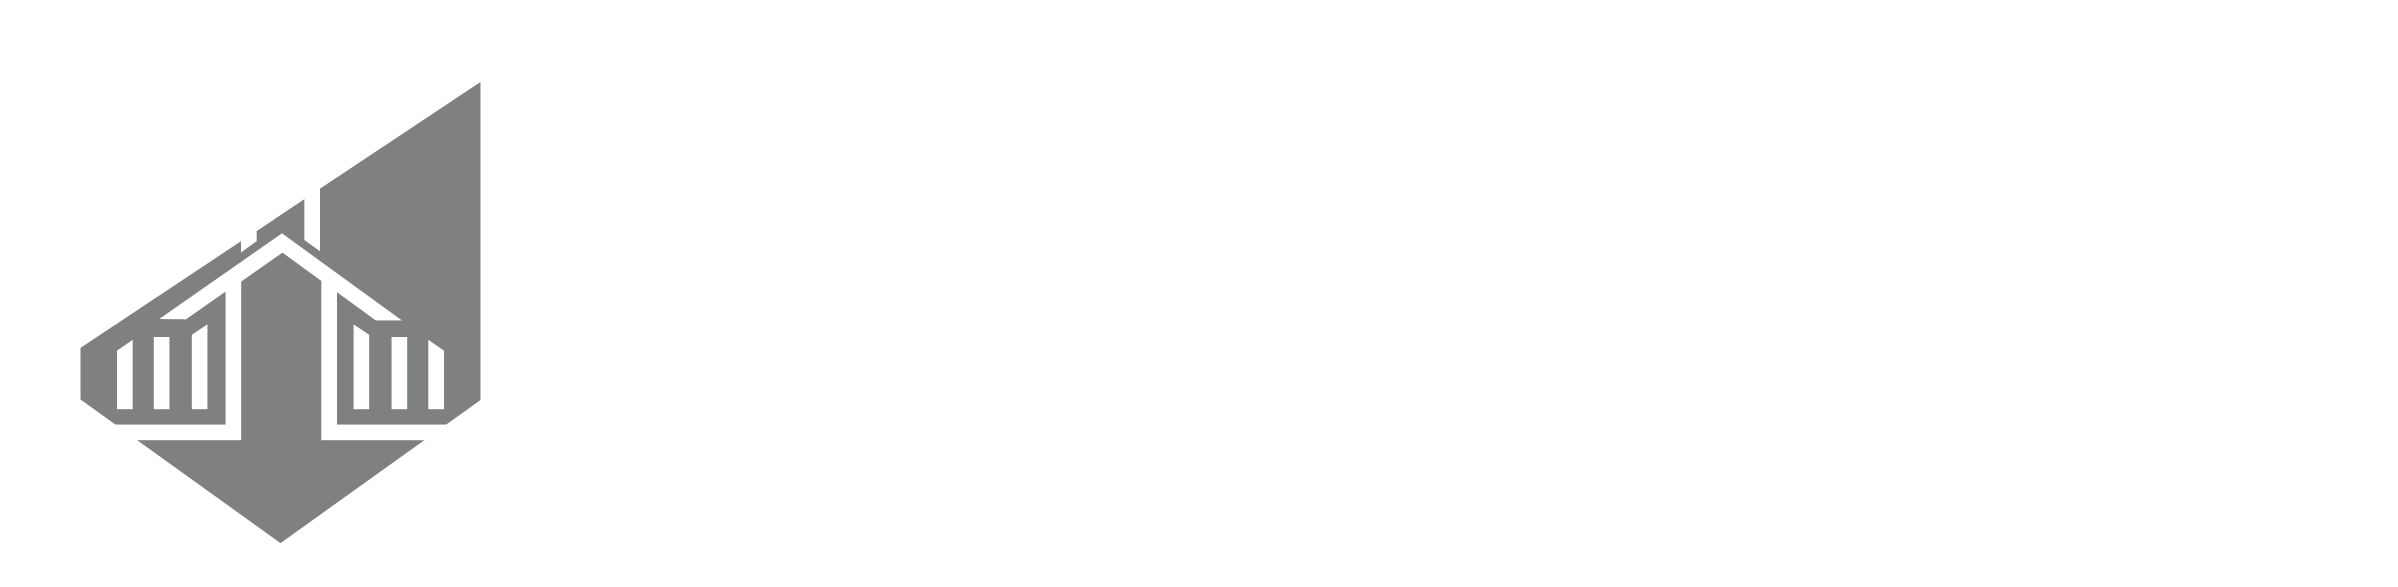 Asphaleia Consulting White Logo